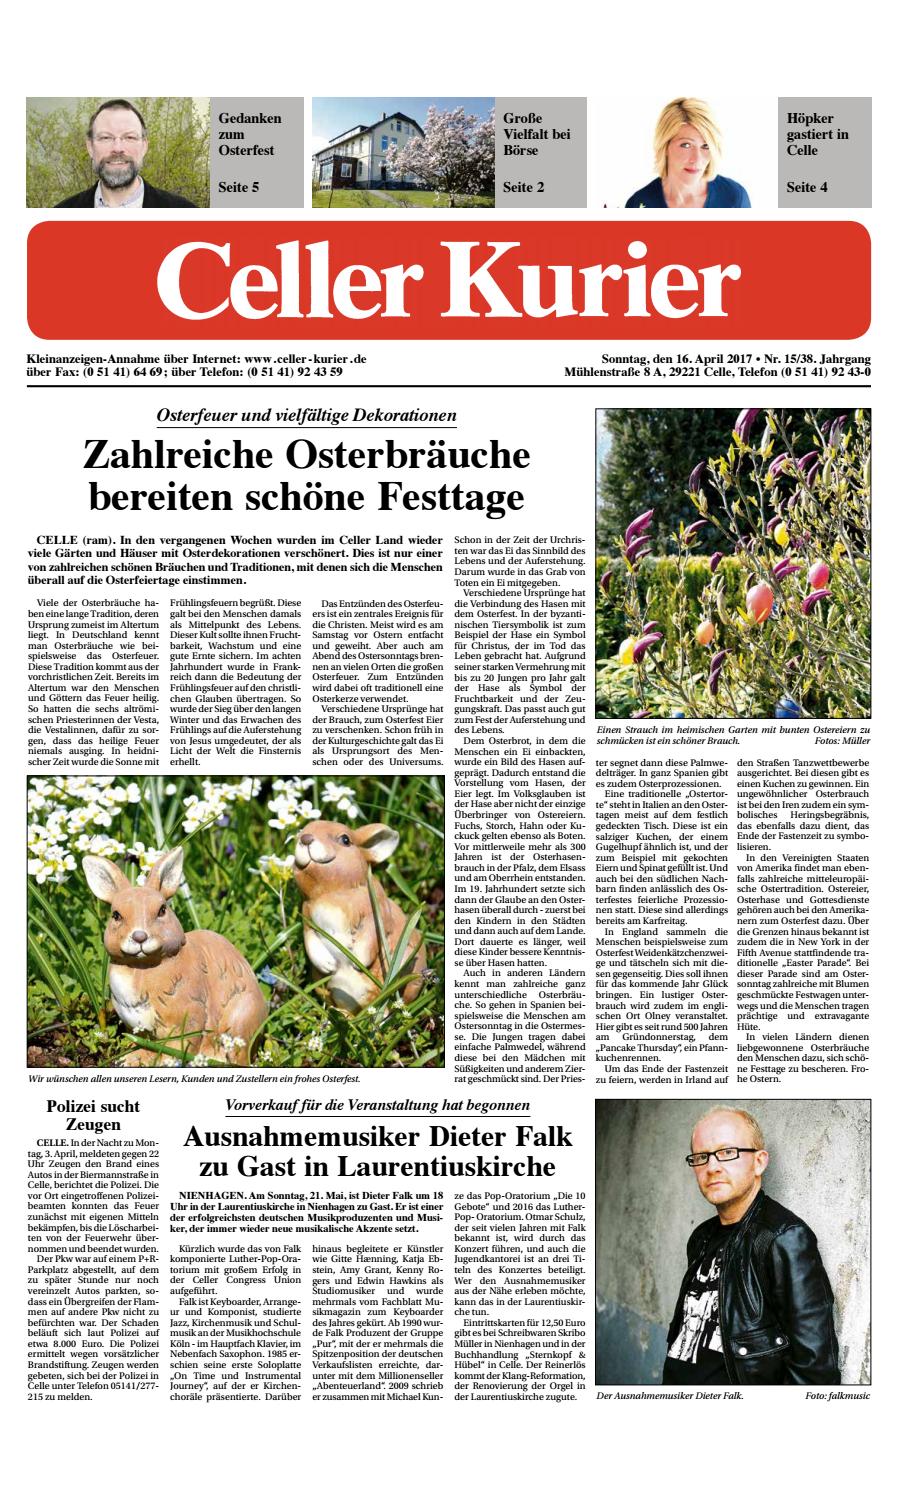 Leisewitz Garten Celle Einzigartig Kw15 Celler Kurier Ausgabe sonntag by Celler Kurier issuu